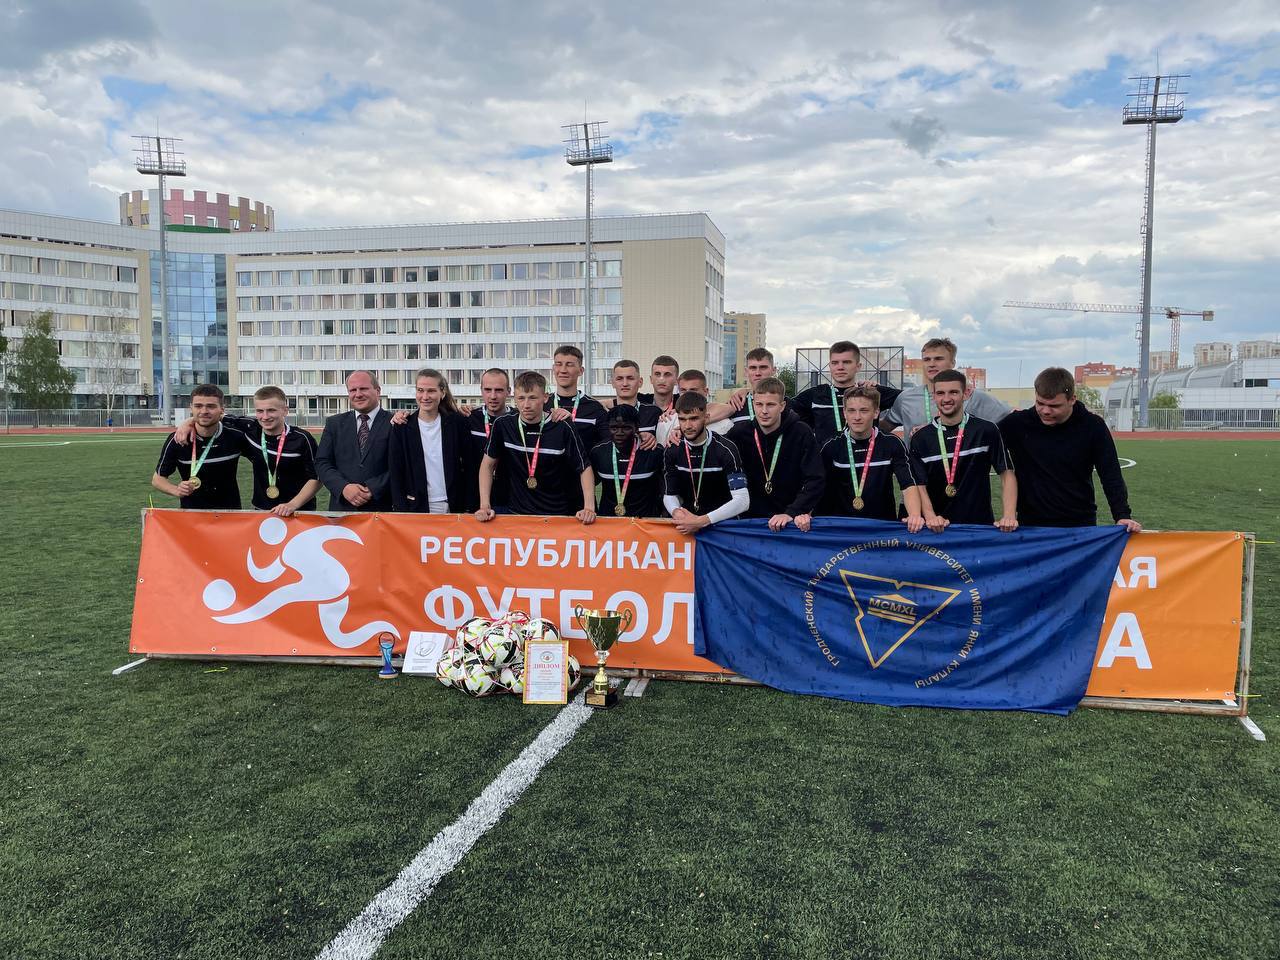 Мужская сборная Купаловского университета стала чемпионом Республиканской студенческой футбольной лиги-2022/2023